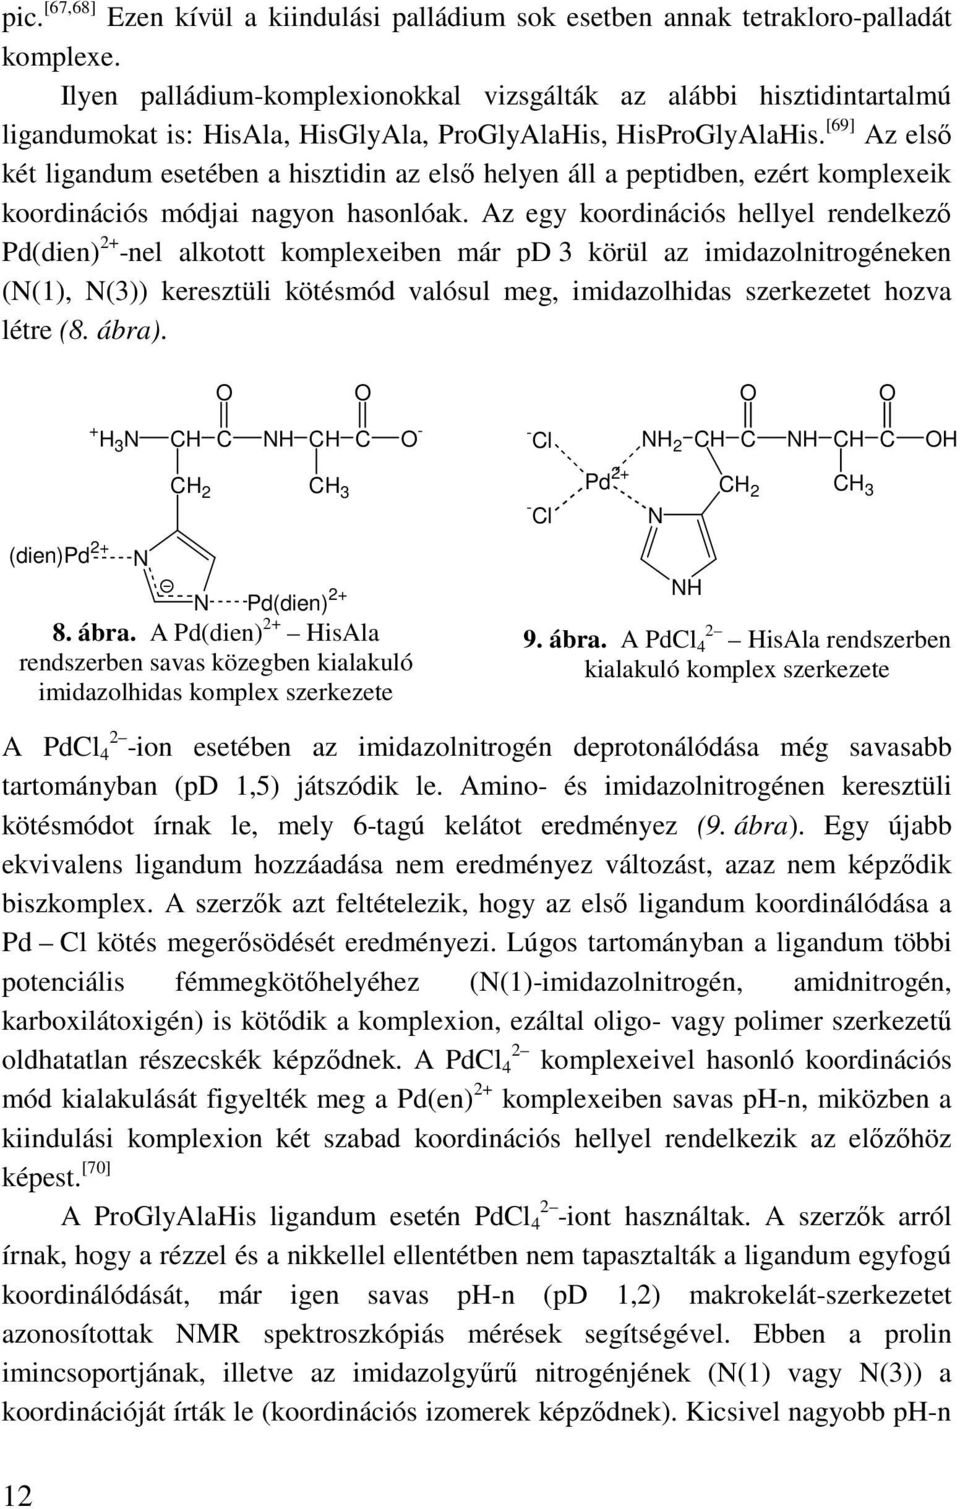 [69] Az elsı két ligandum esetében a hisztidin az elsı helyen áll a peptidben, ezért komplexeik koordinációs módjai nagyon hasonlóak.